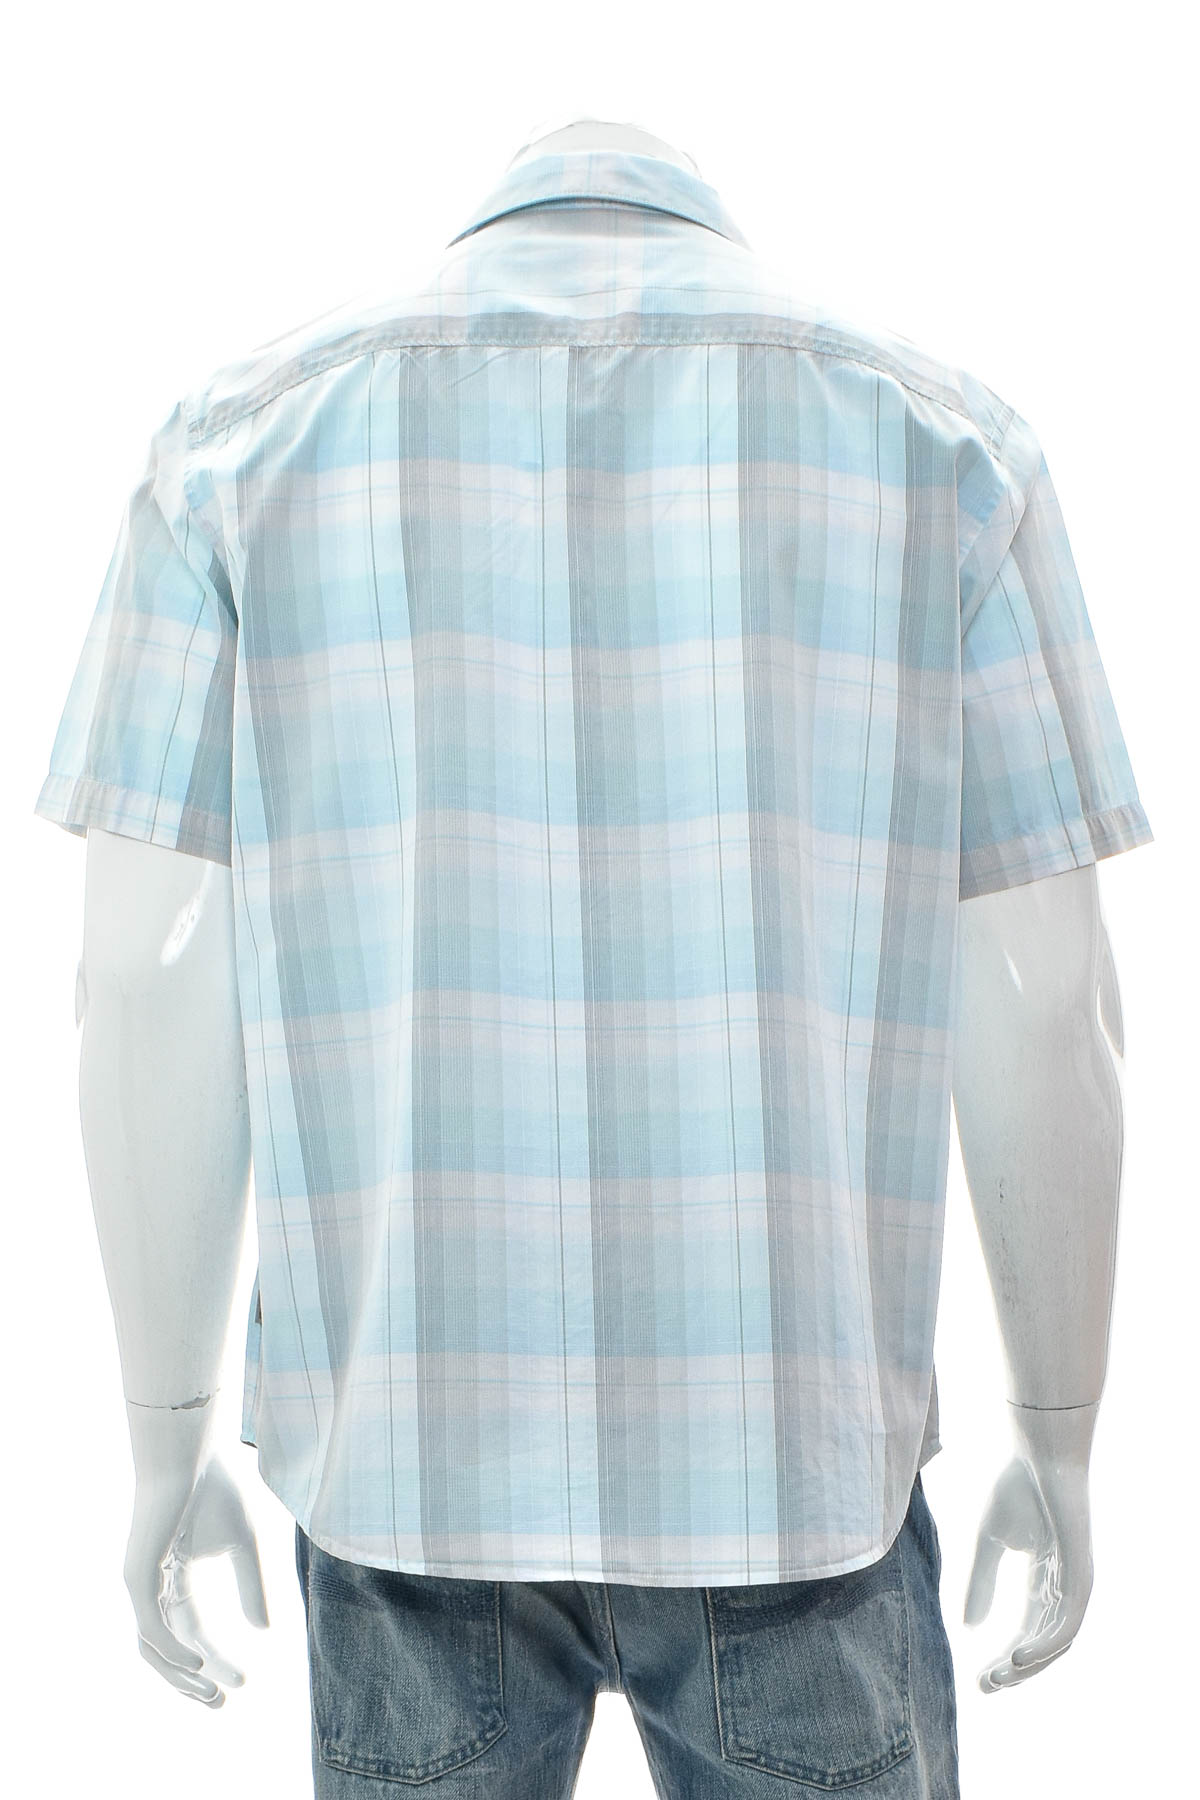 Men's shirt - Calvin Klein - 1